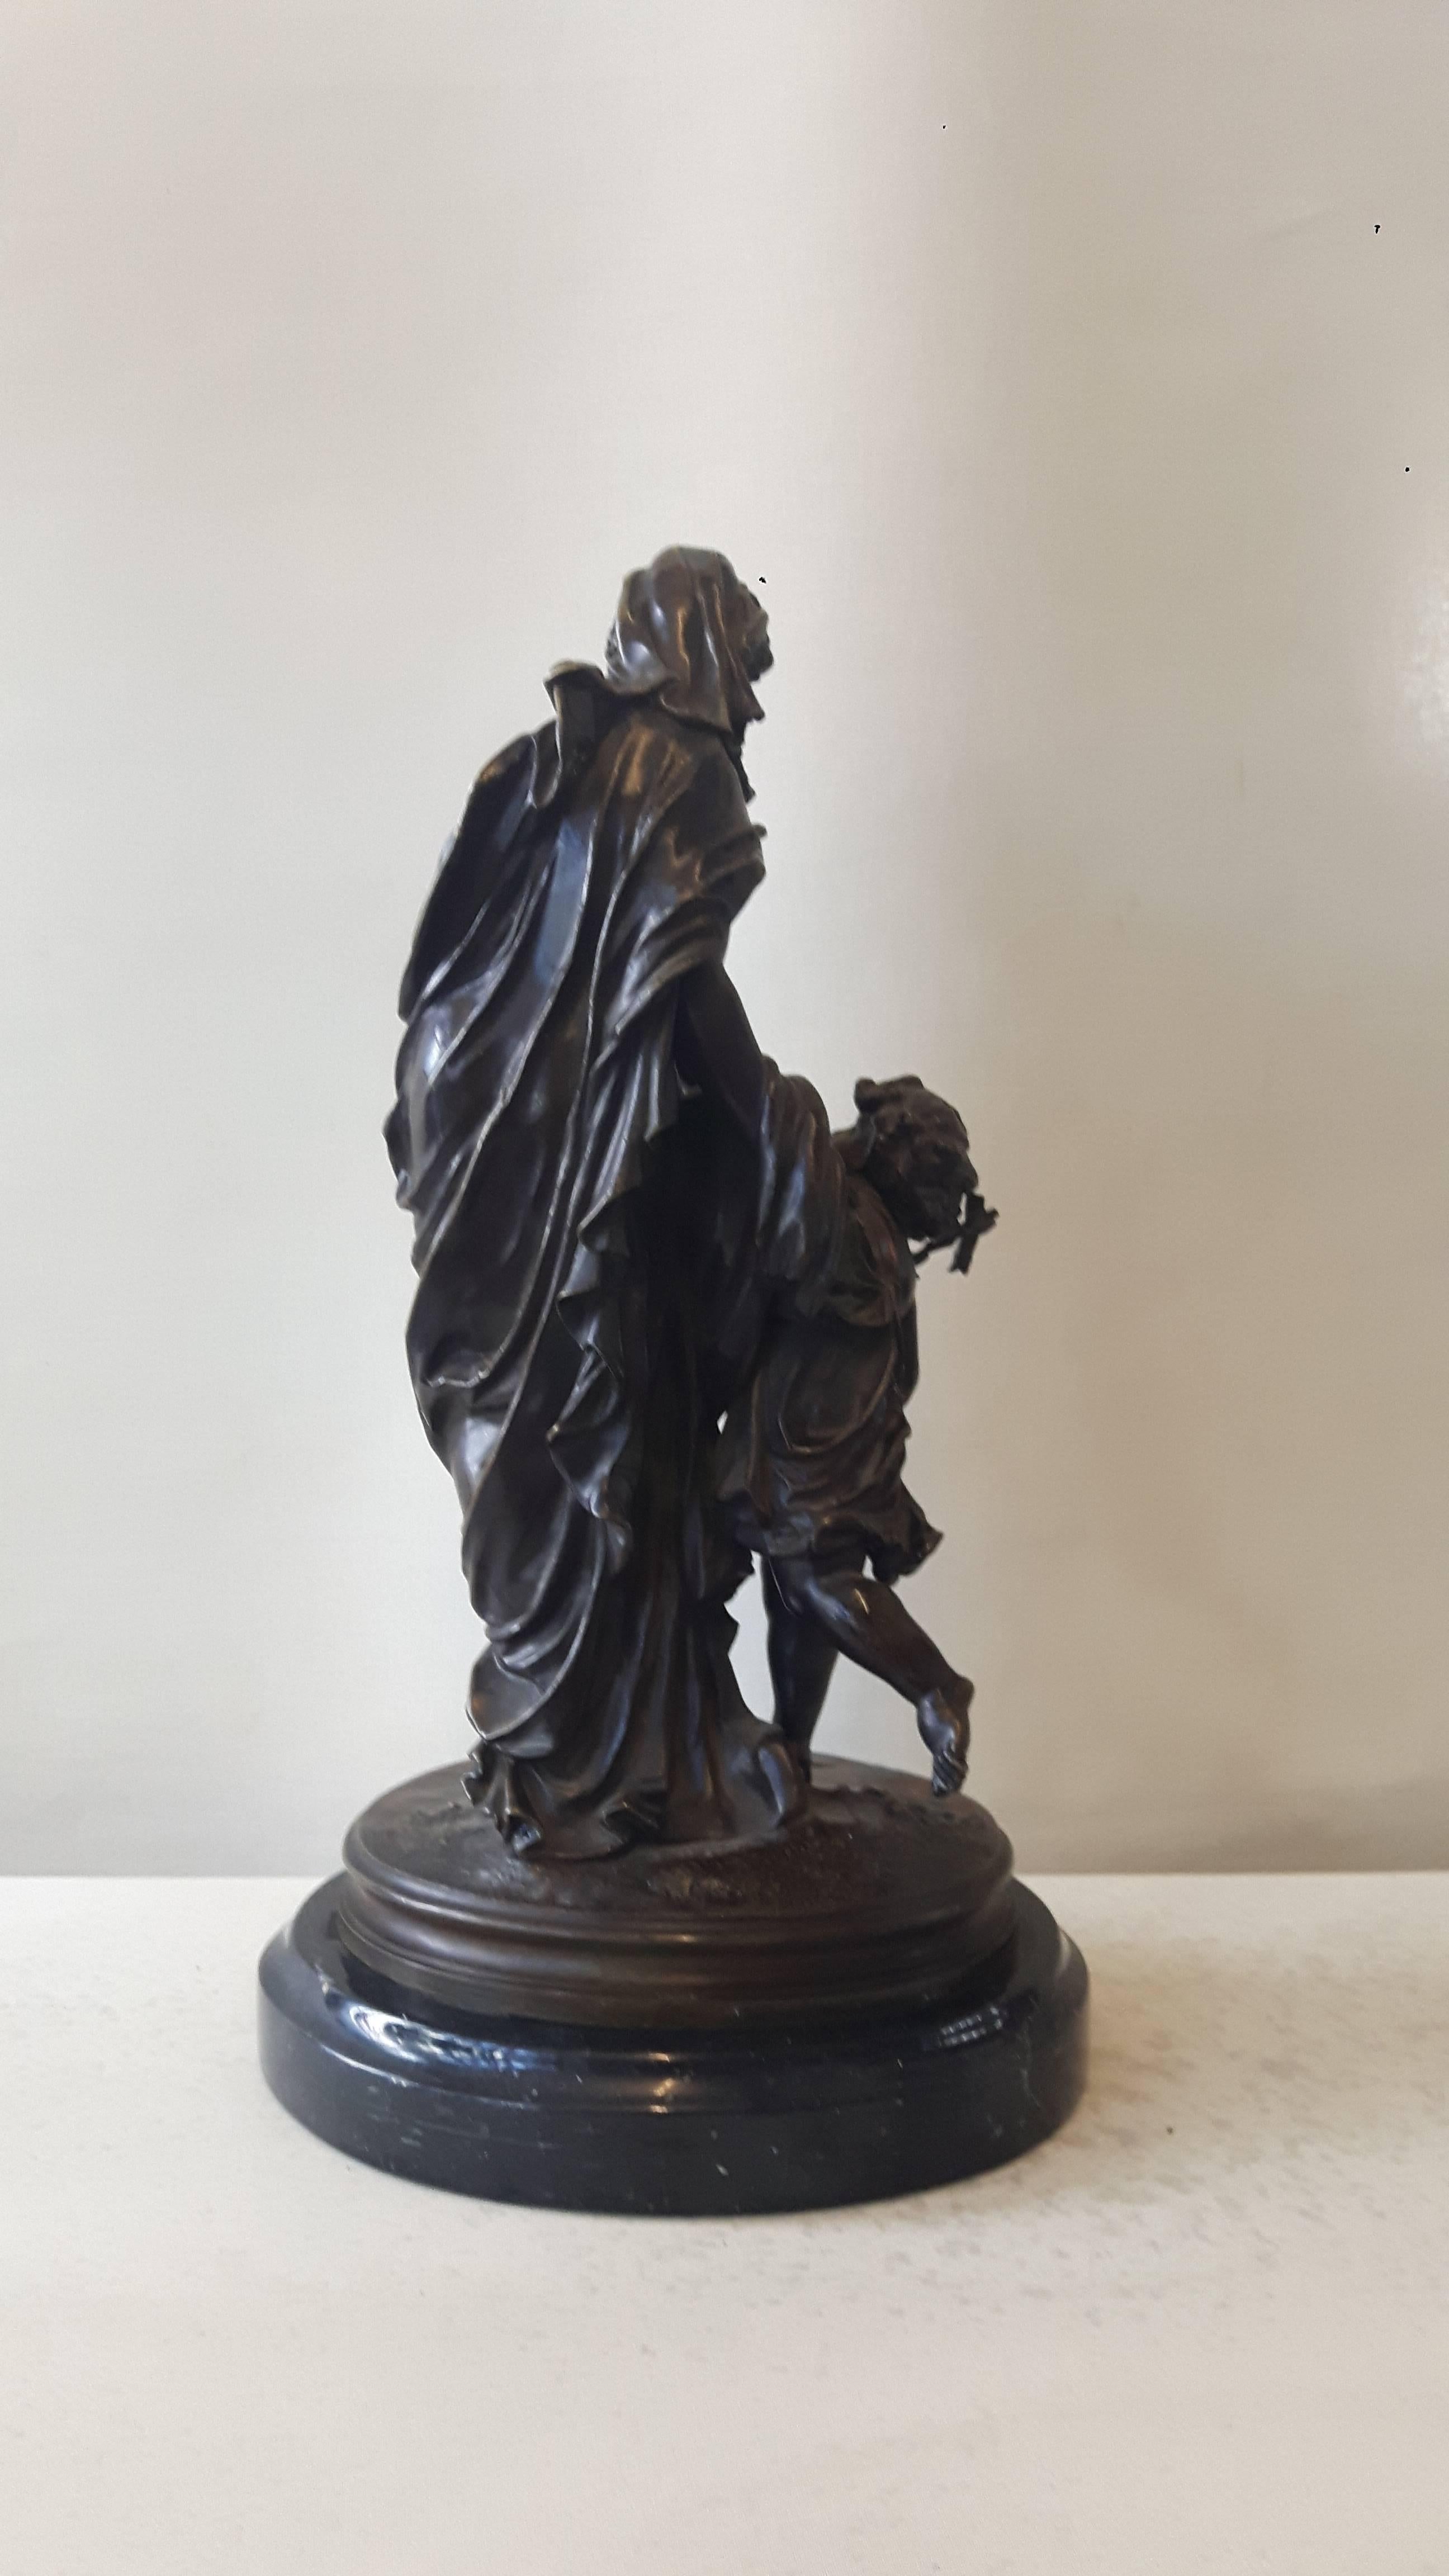 Une belle statue en bronze représentant une dame en robe grecque attrapée par un cupidon tenant une flèche.
Français, vers 1870.